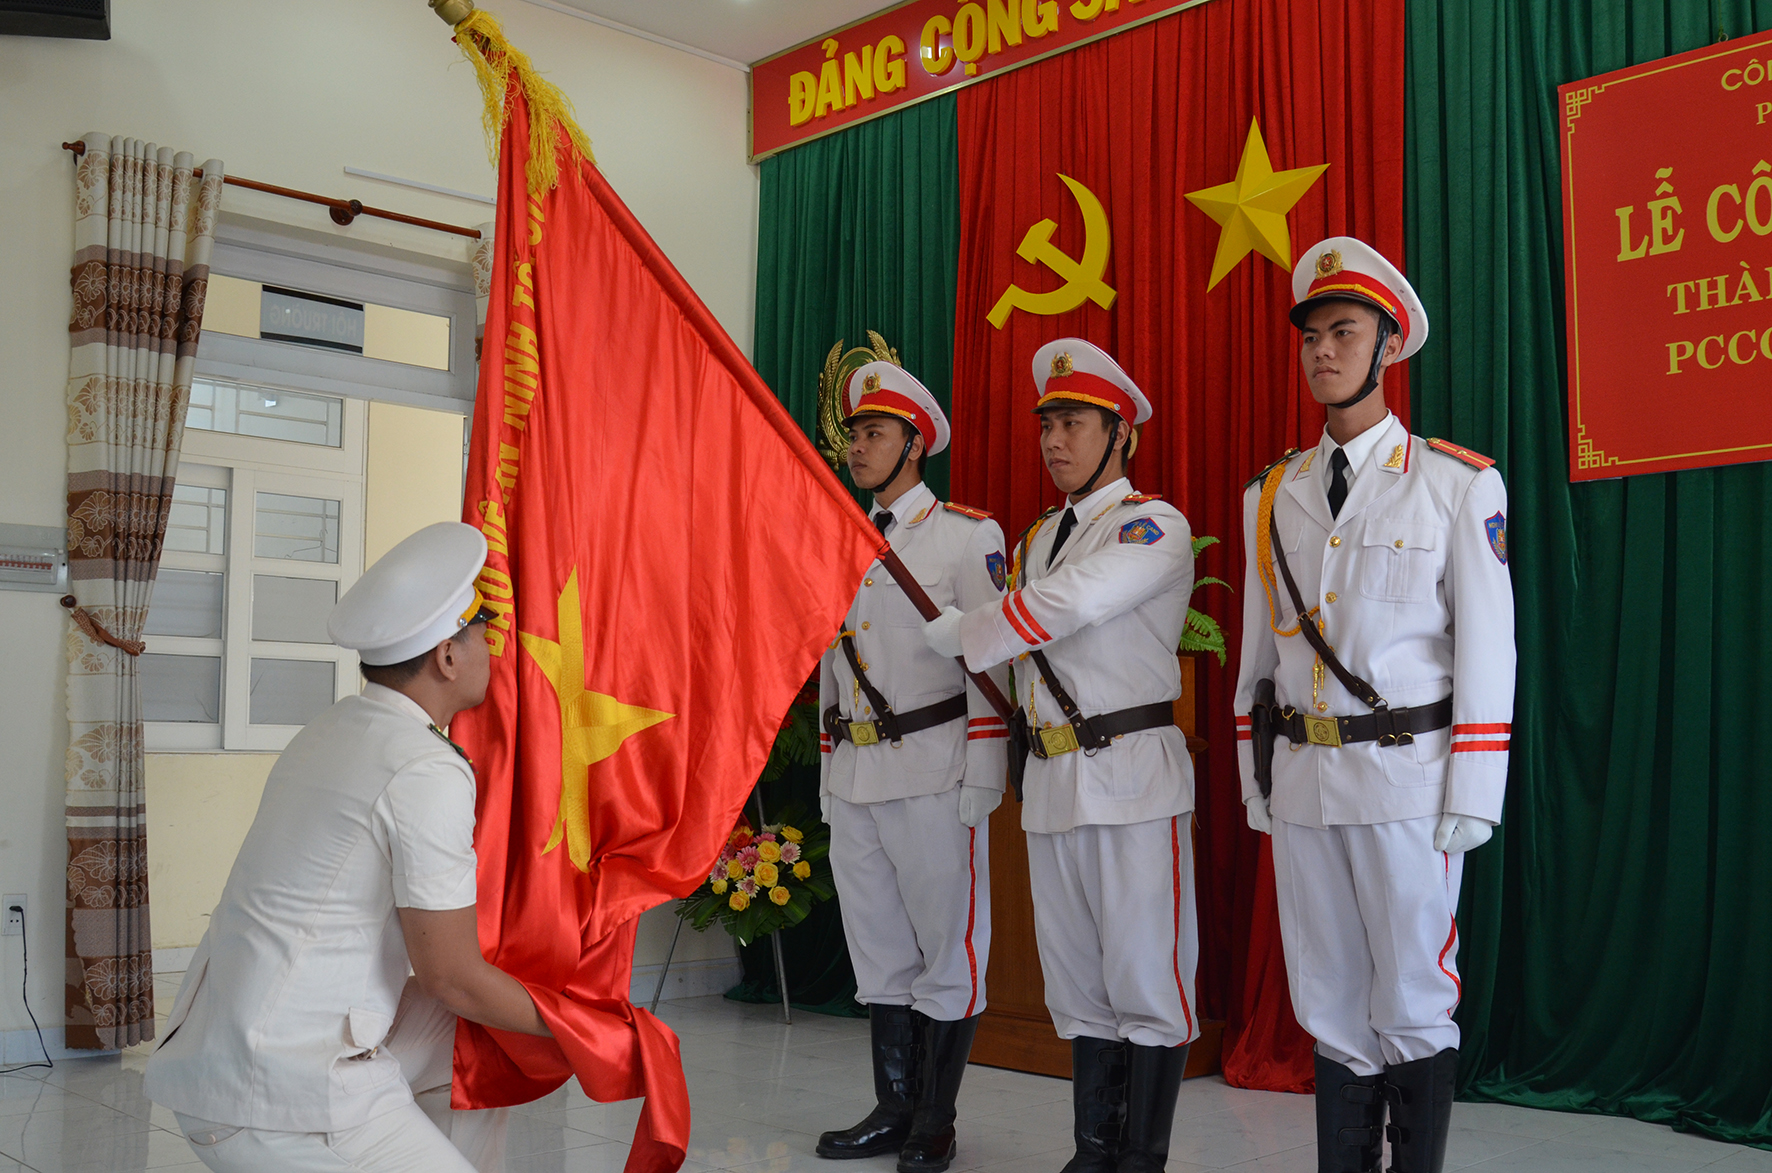 Thực hiện nghi thức tuyên thệ trước cờ Tổ quốc tại lễ công bố quyết định.